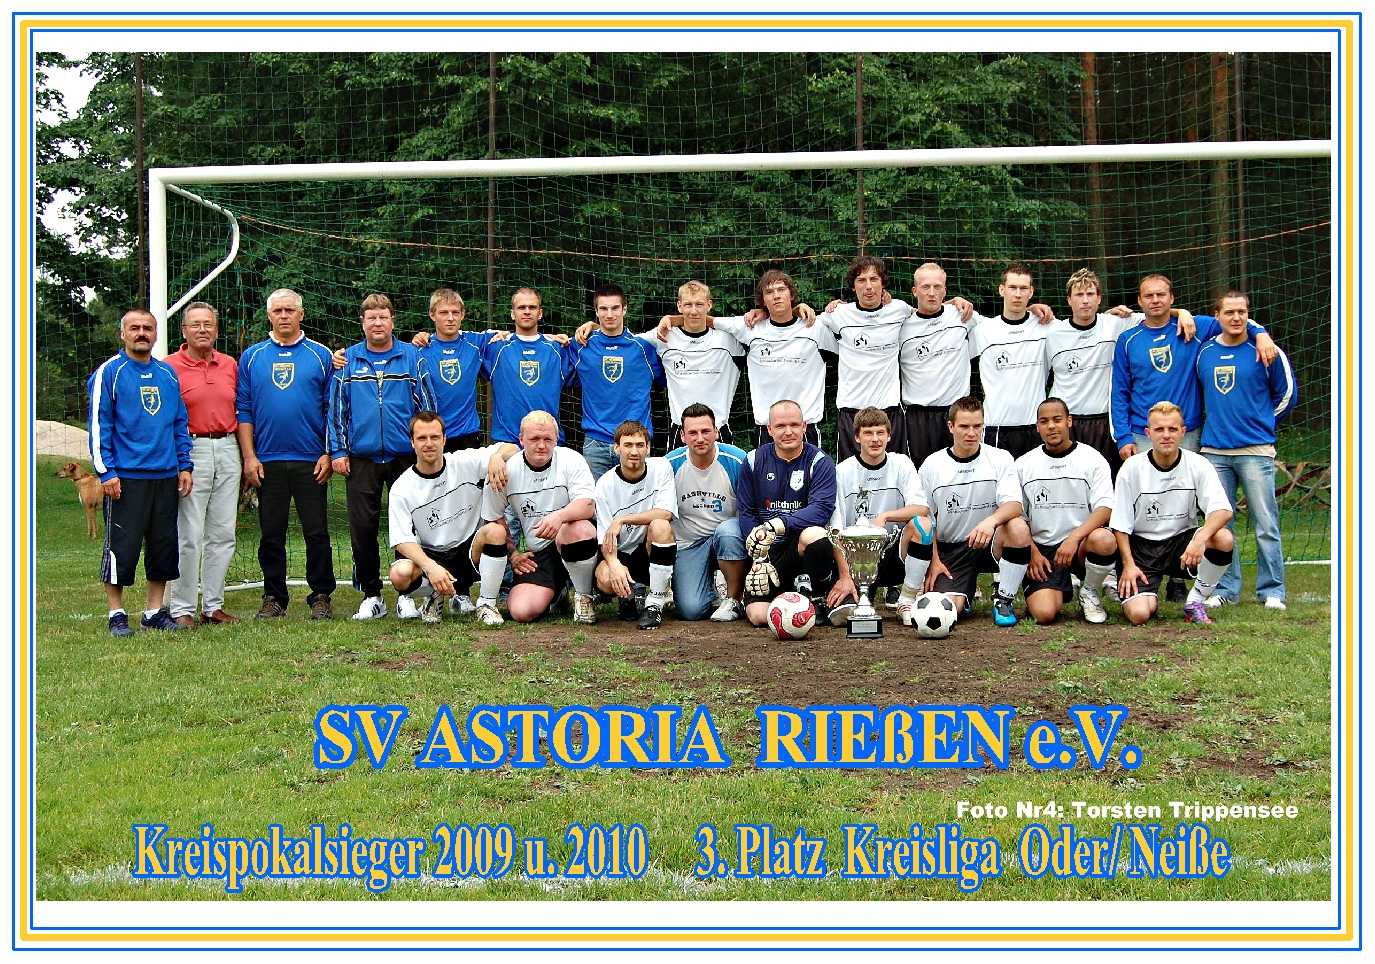 Mannschaftsfoto/Teamfoto von SV Astoria Rieen